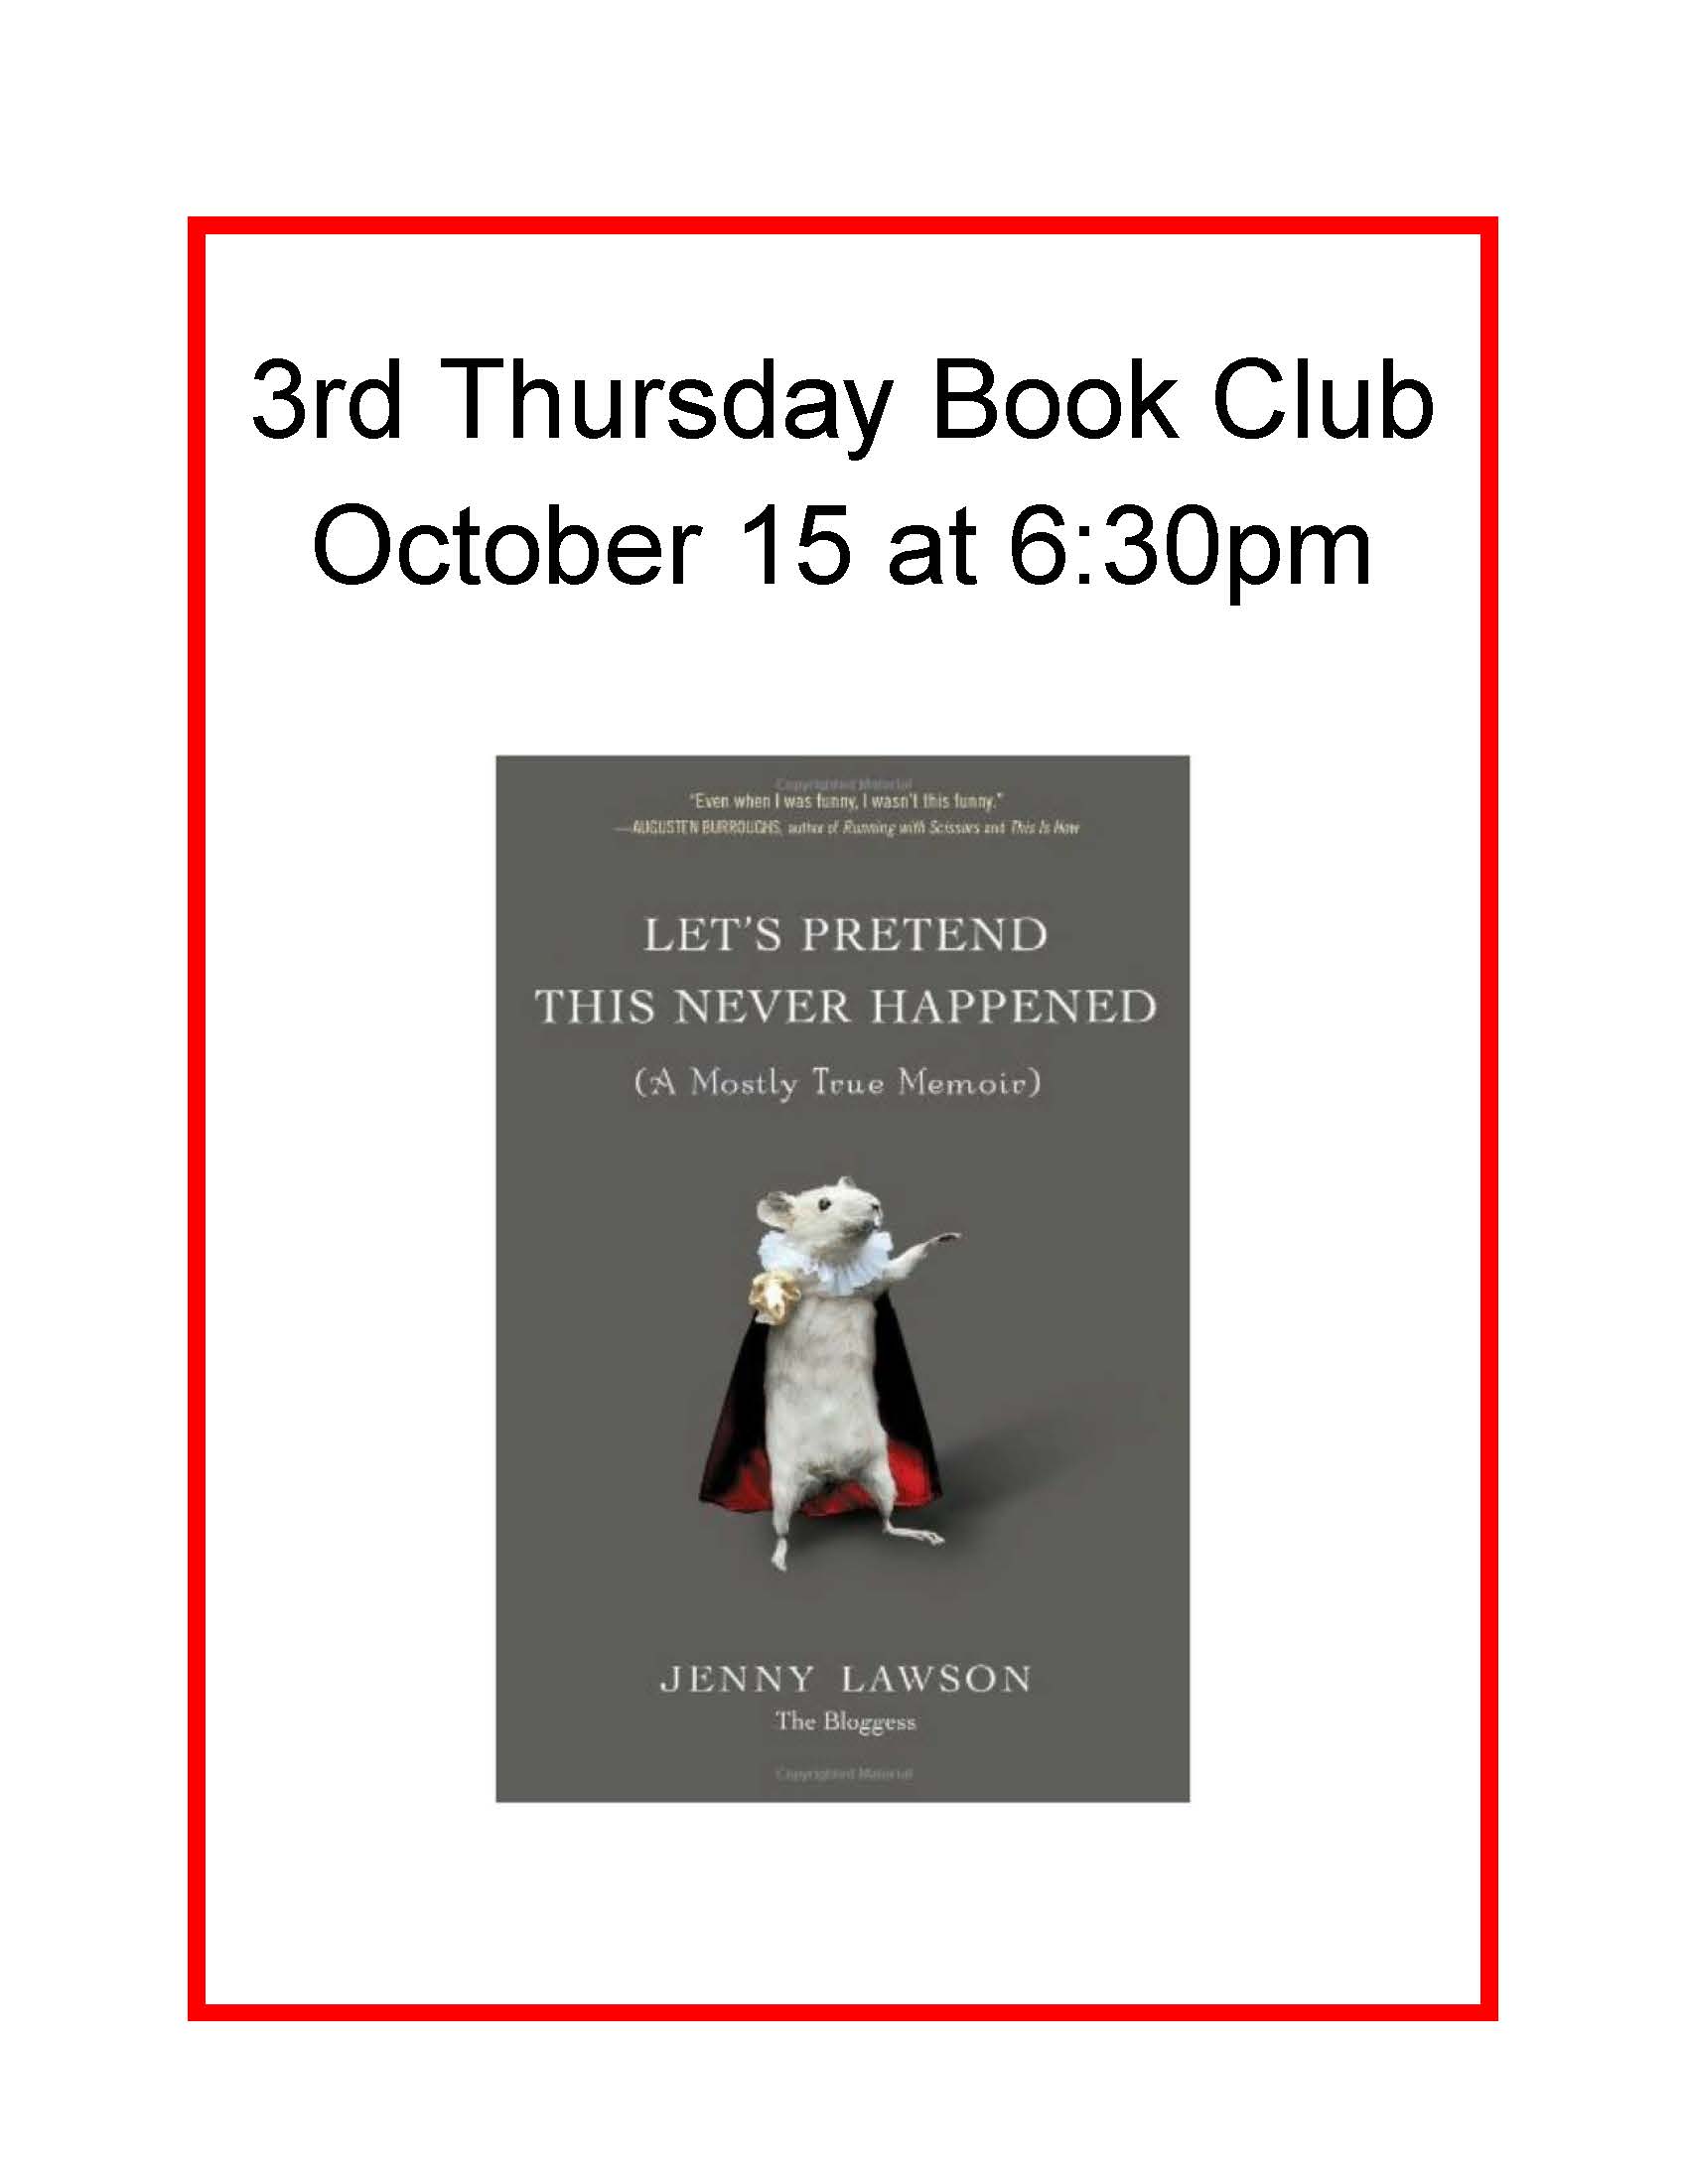 2010 book club flyer.jpg